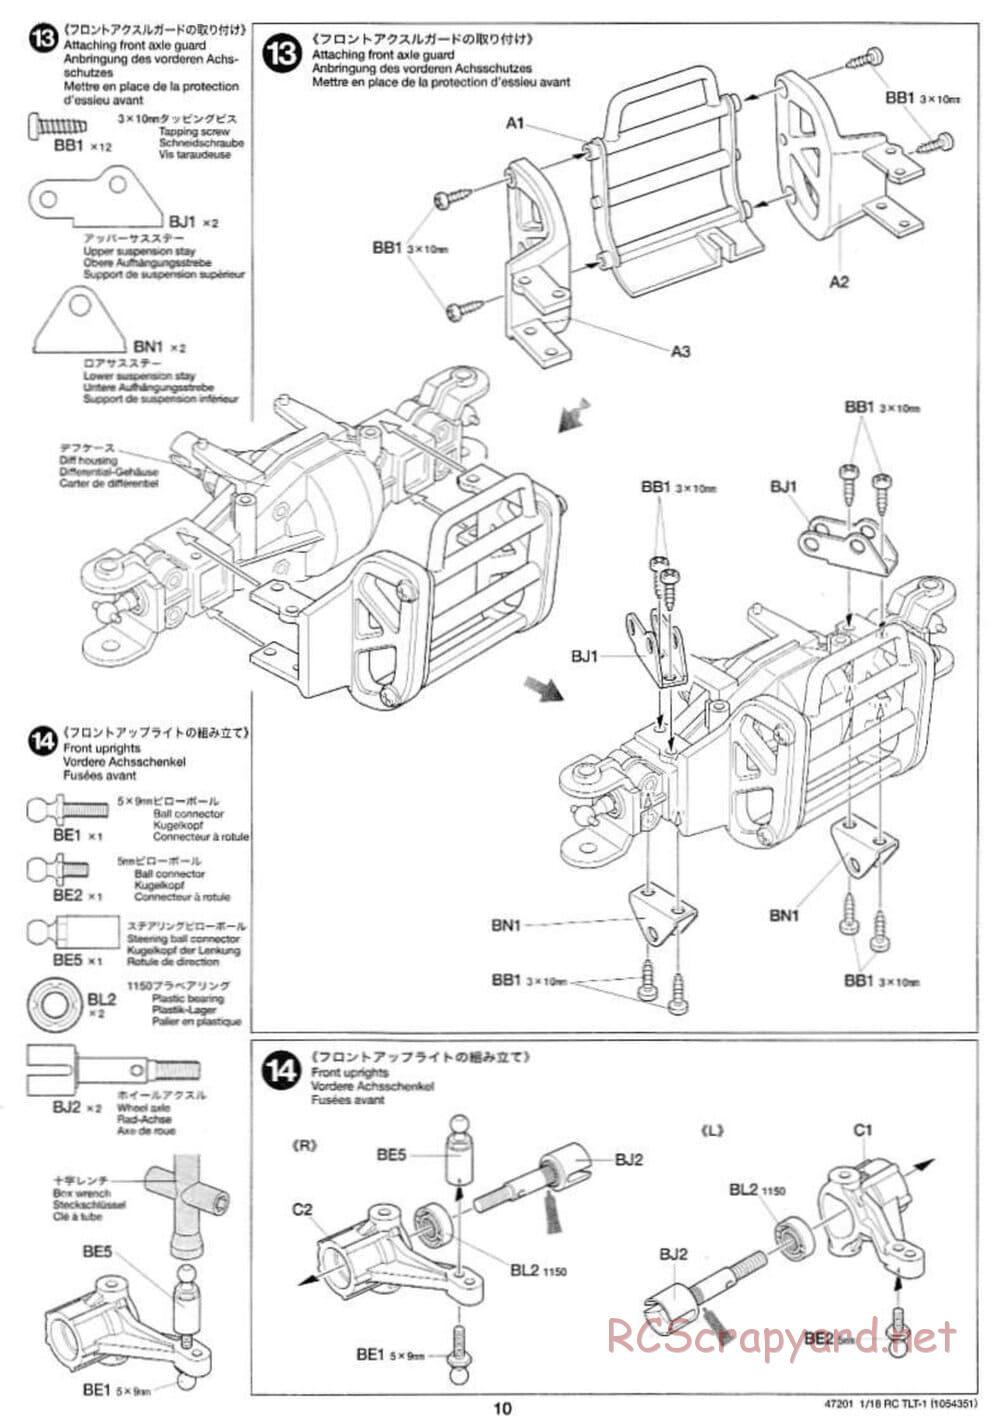 Tamiya - Rock Buster - TLT-1 Chassis - Manual - Page 10